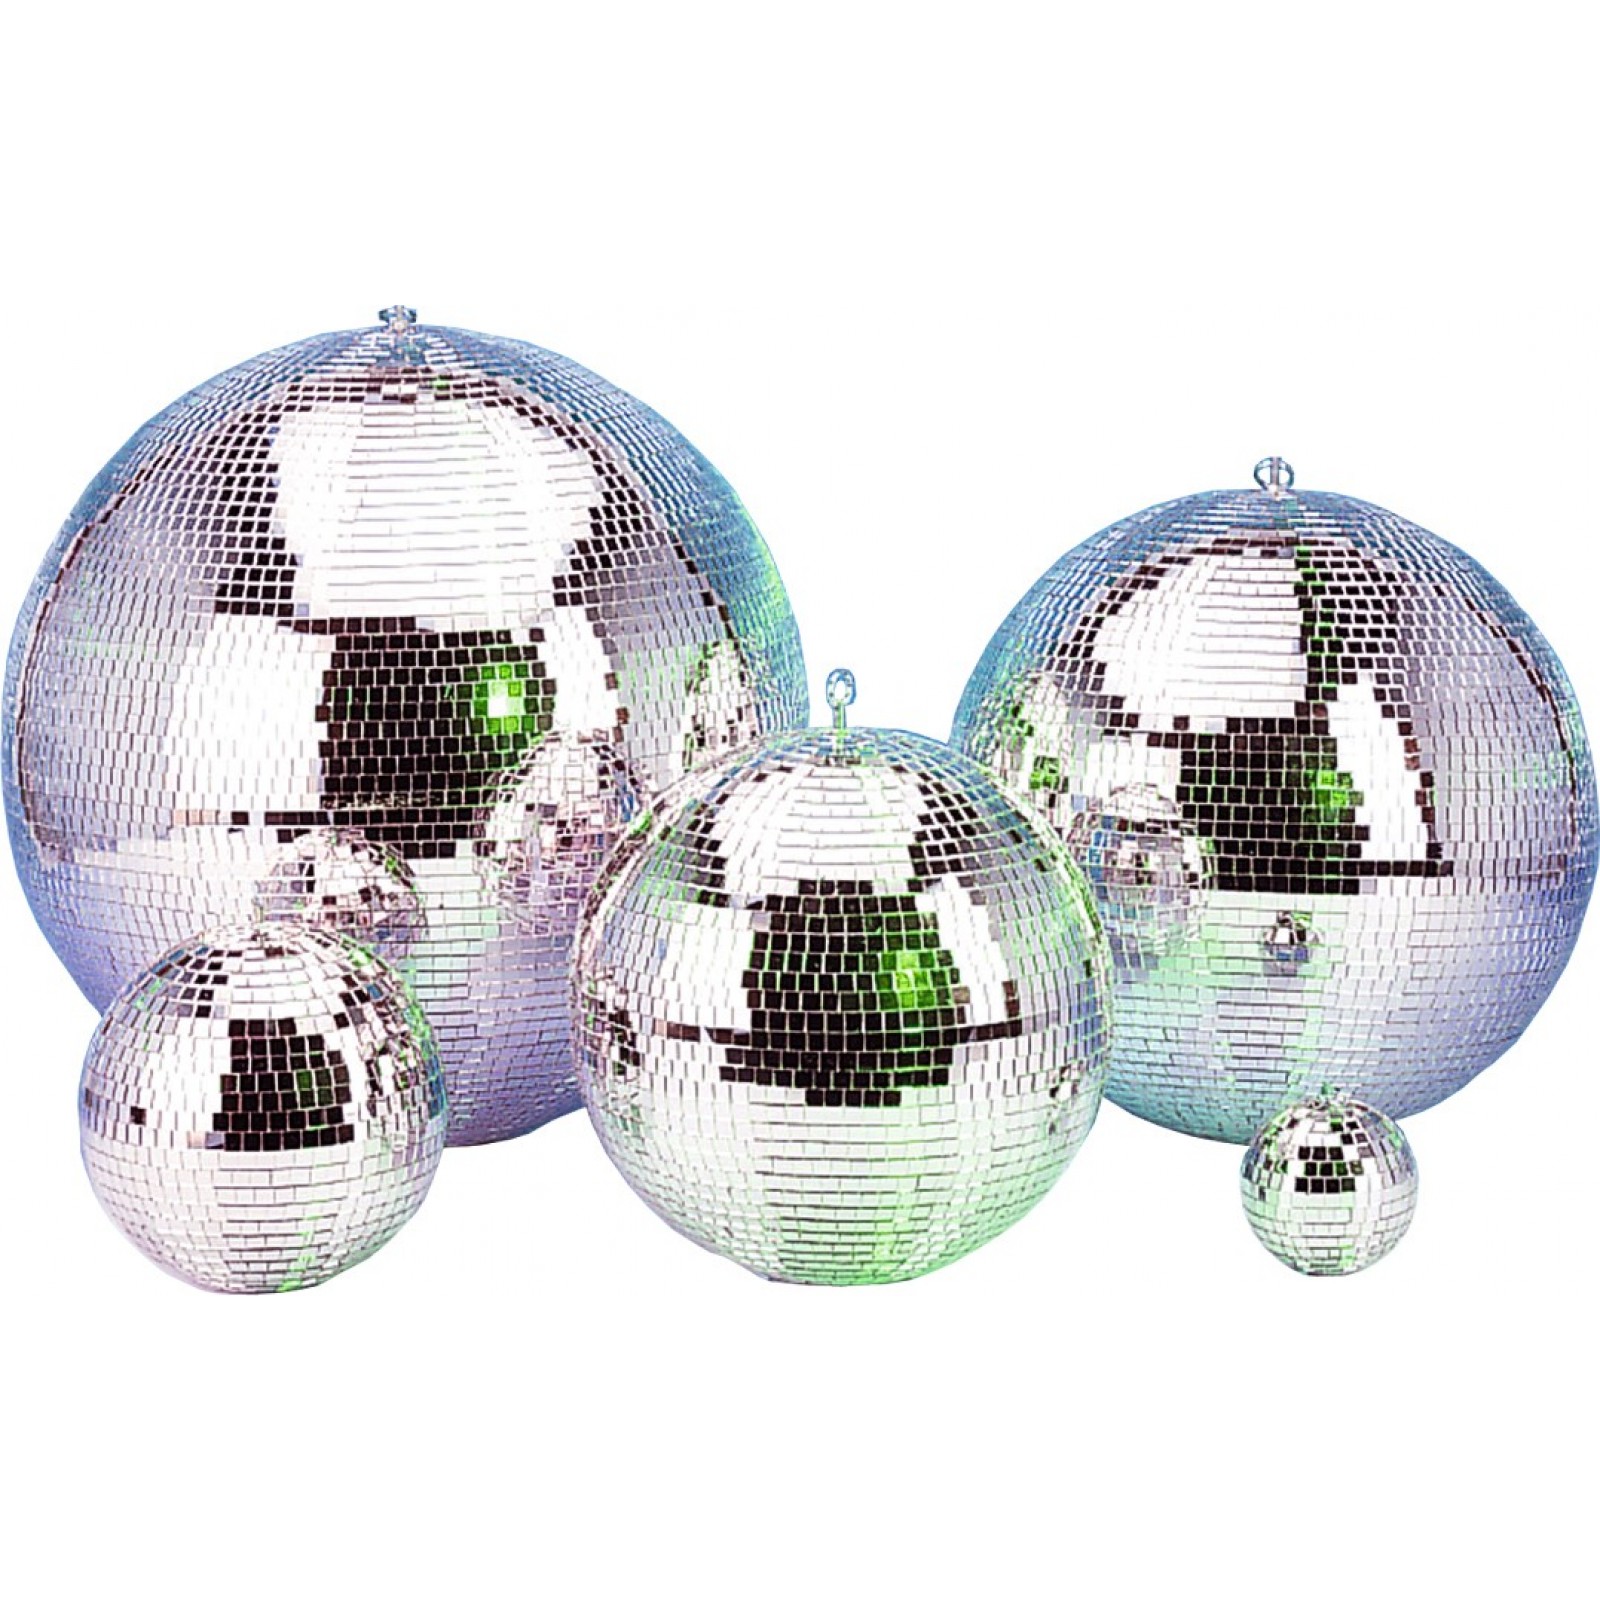 MIRROR BALL 12"/30cm, mirror ball 30cm small mirrors